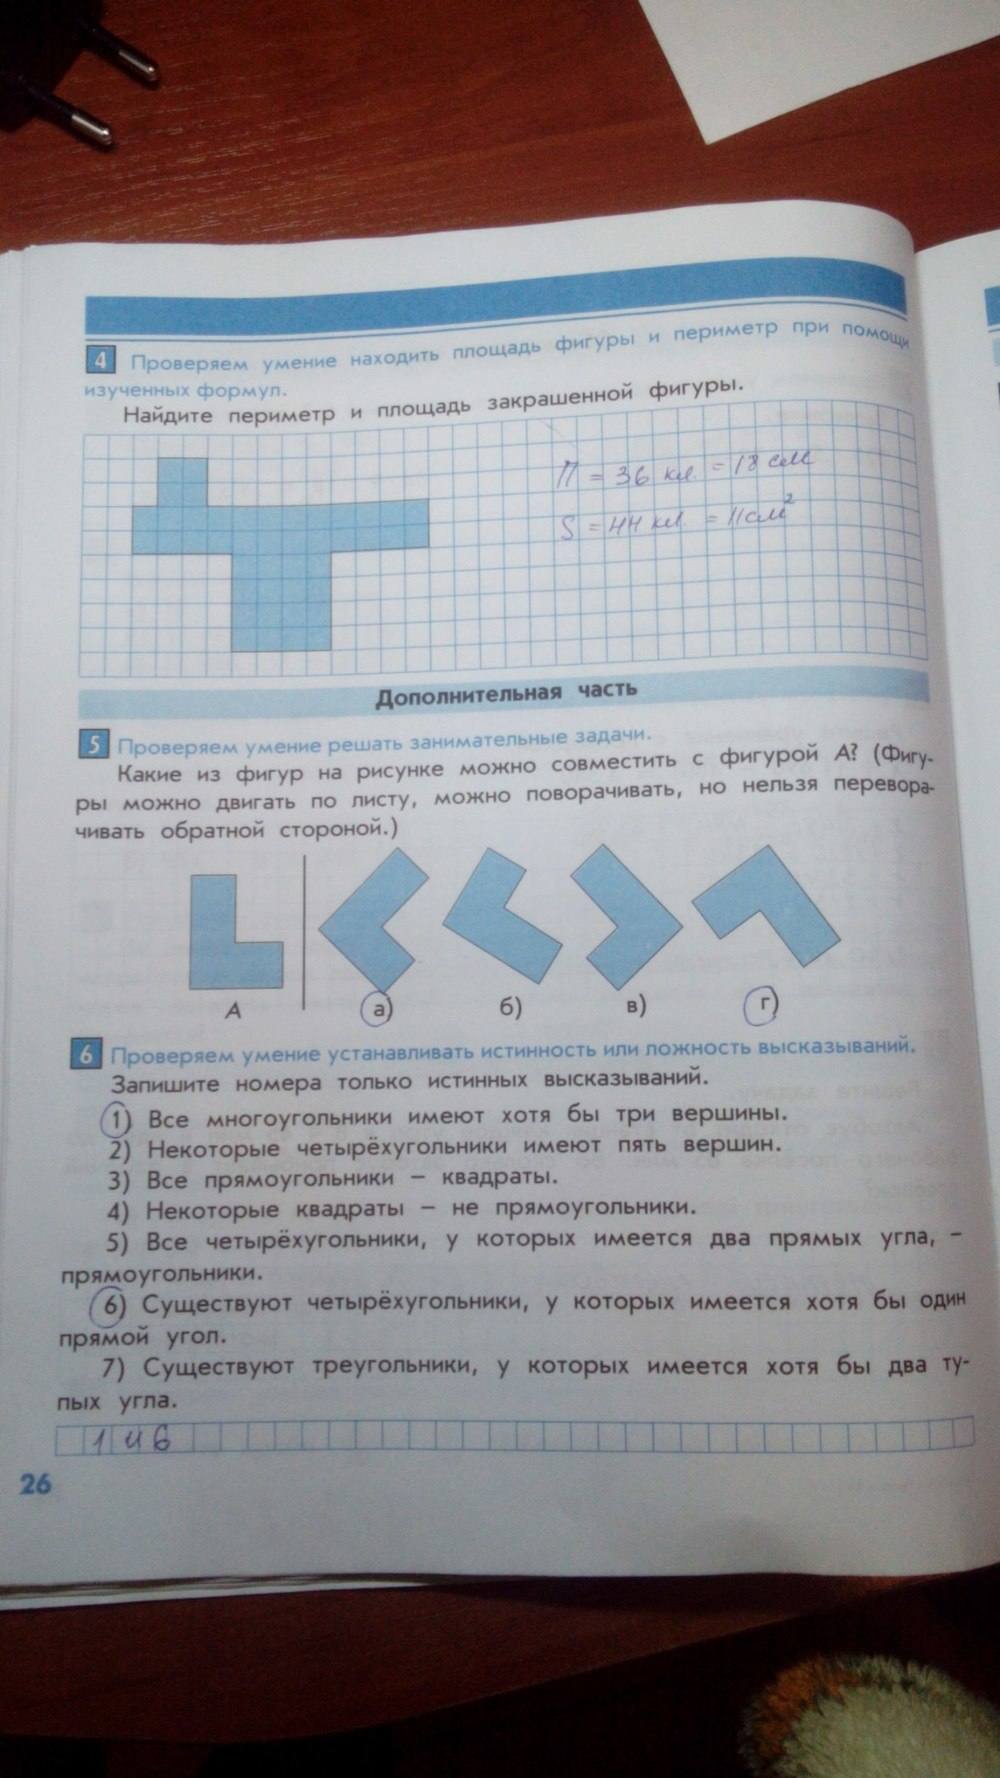 Тесты и контрольные работы, 4 класс, Козлова, Рубин, 2011, задание: стр. 26